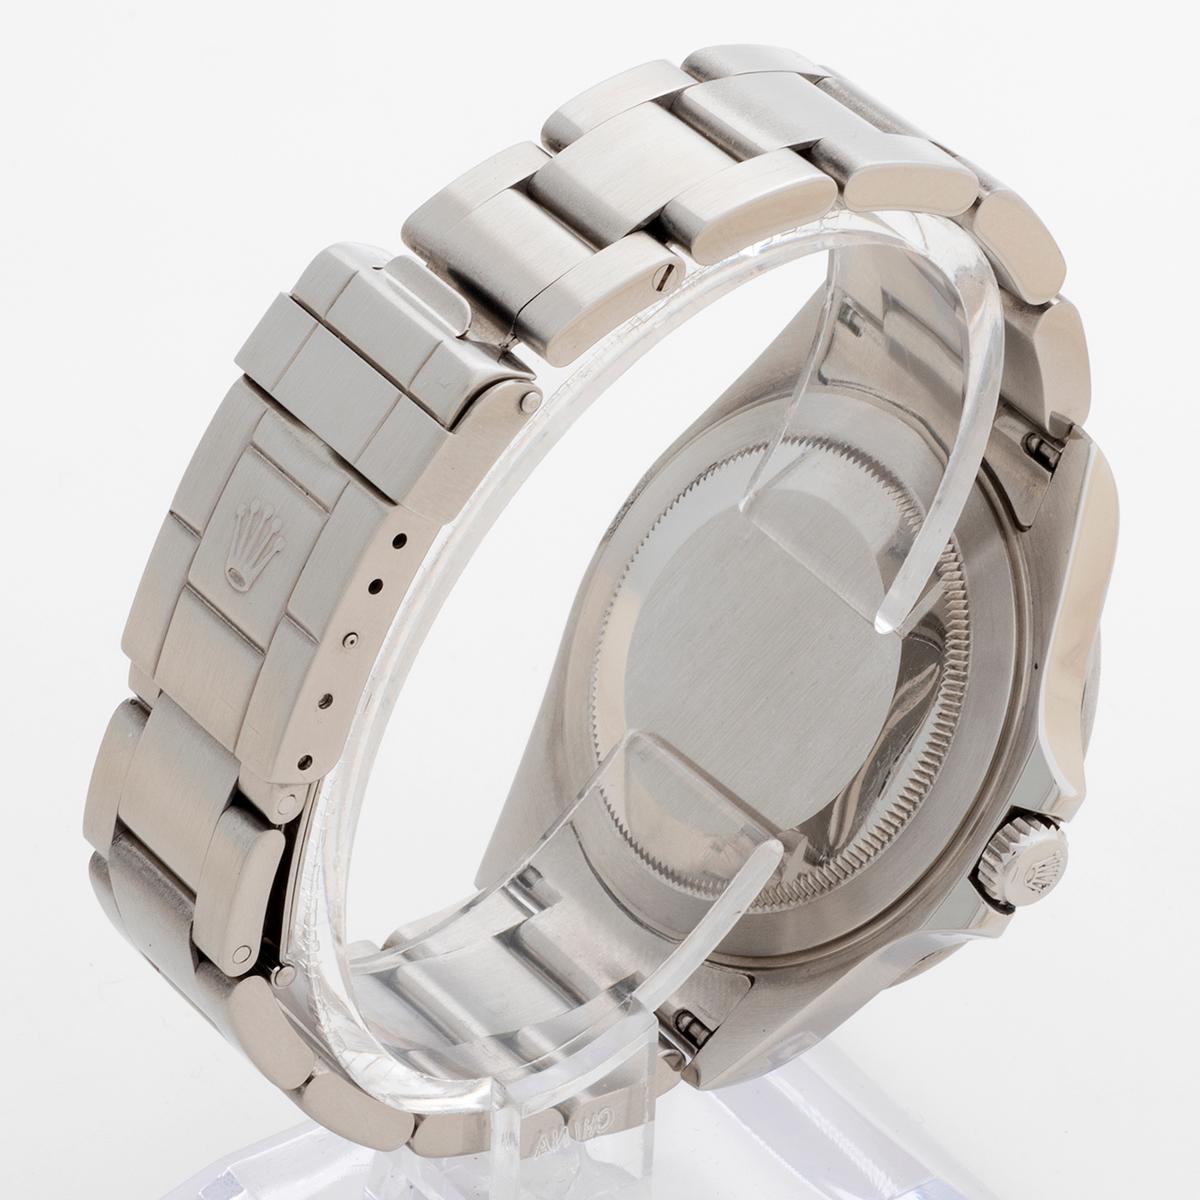 Rolex Explorer II Wristwatch Ref 16570, 40mm Case, 3186 movement, Yr 2010. 1